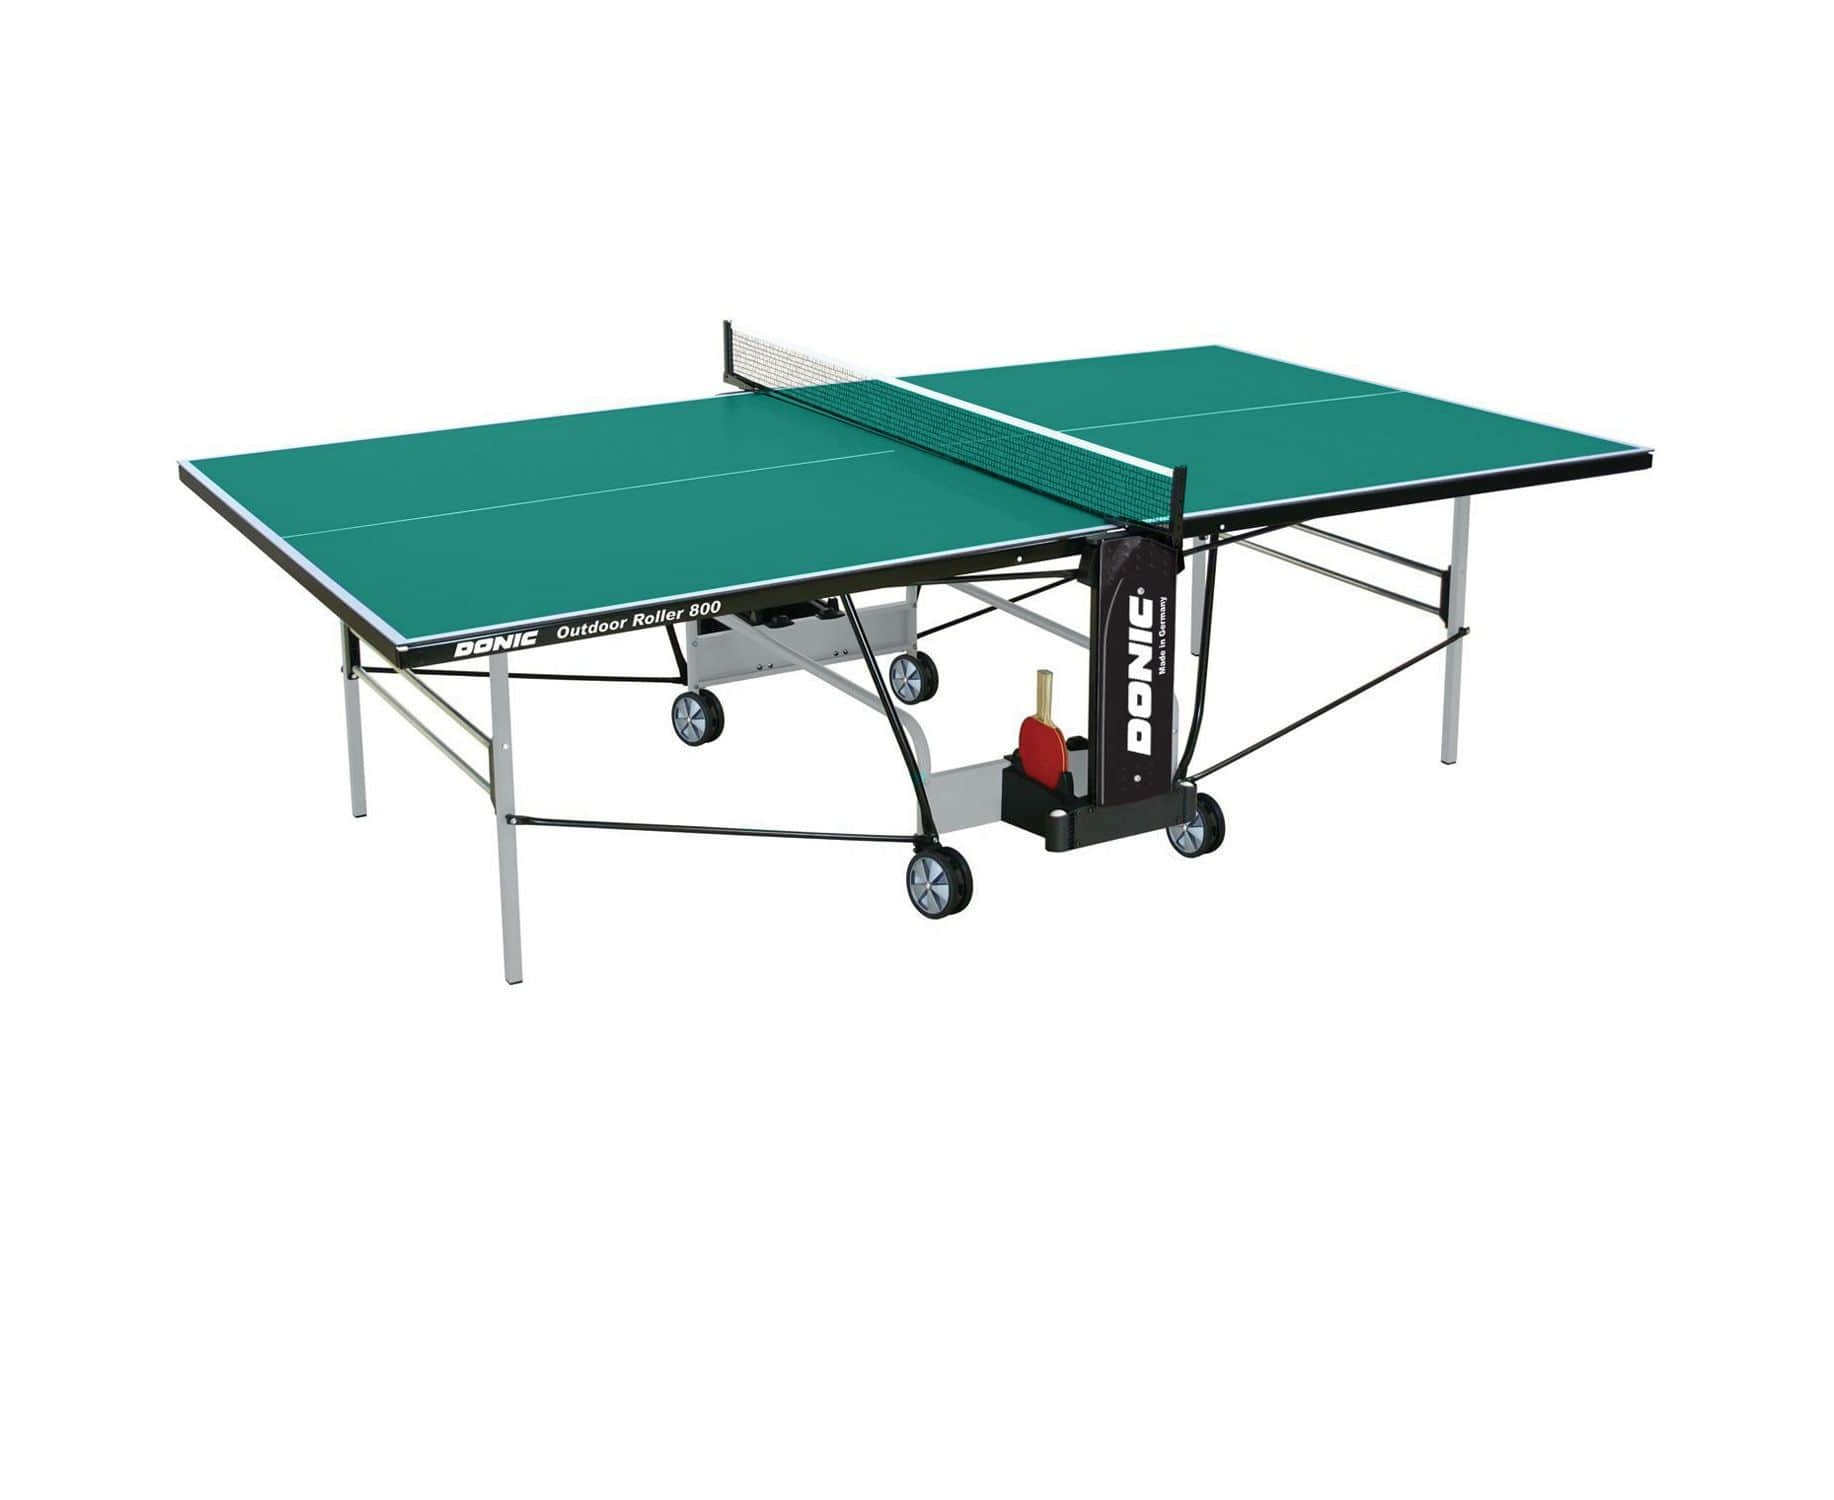 Теннисный стол DONIC OUTDOOR ROLLER 800-5 GREEN